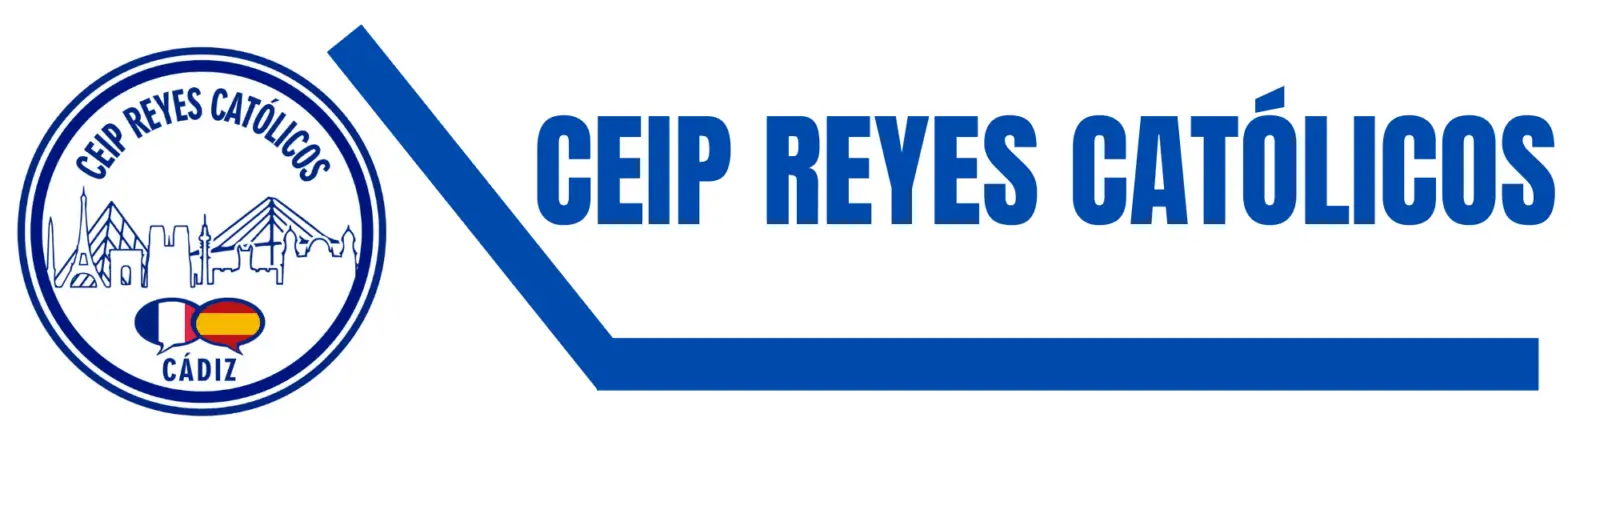 C.E.I.P.-REYES-CATÓLICOS1